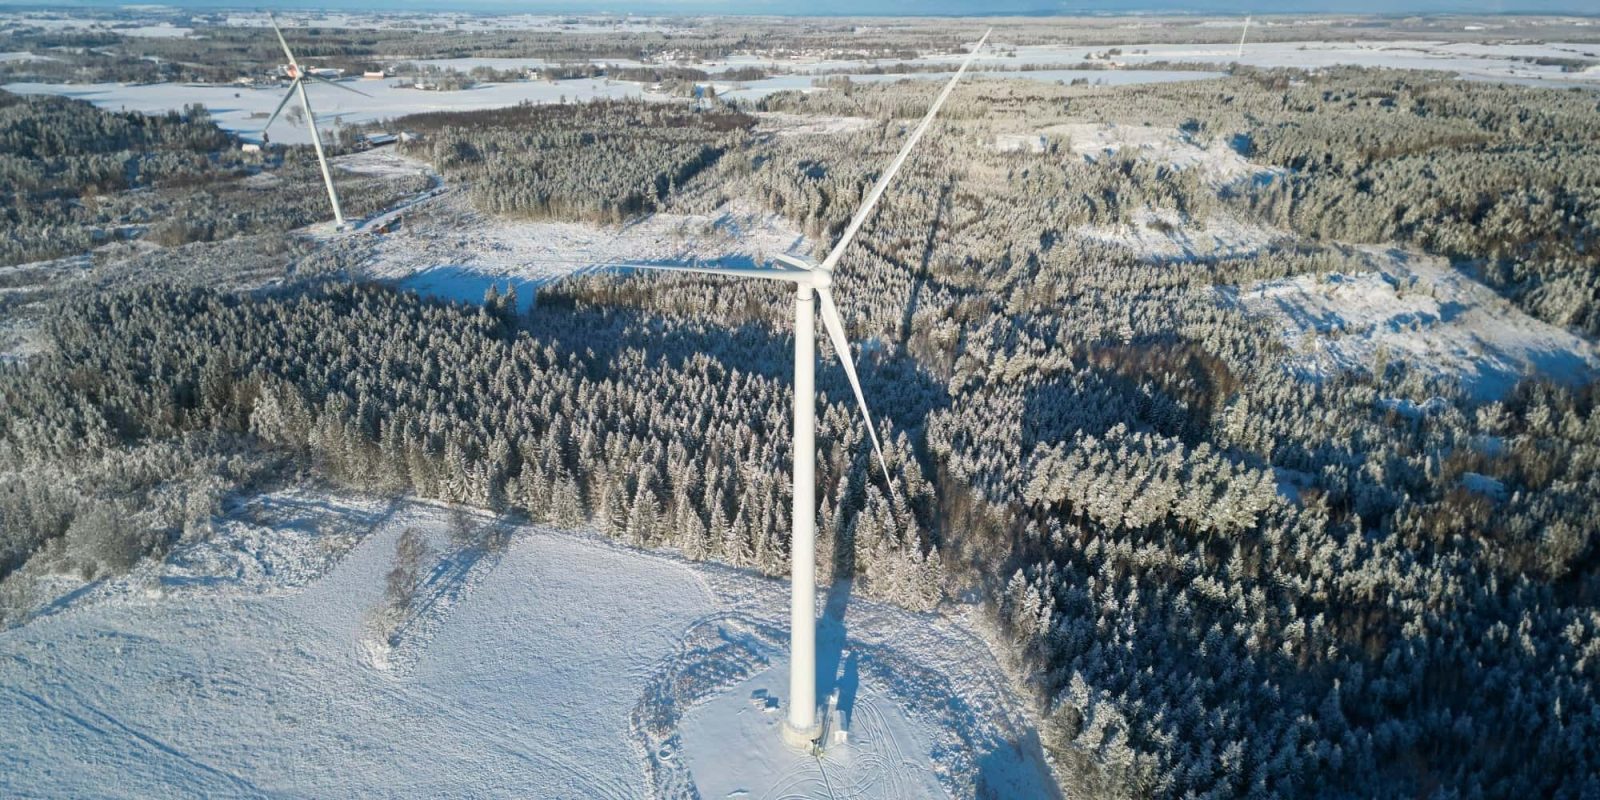 world's tallest wooden wind turbine